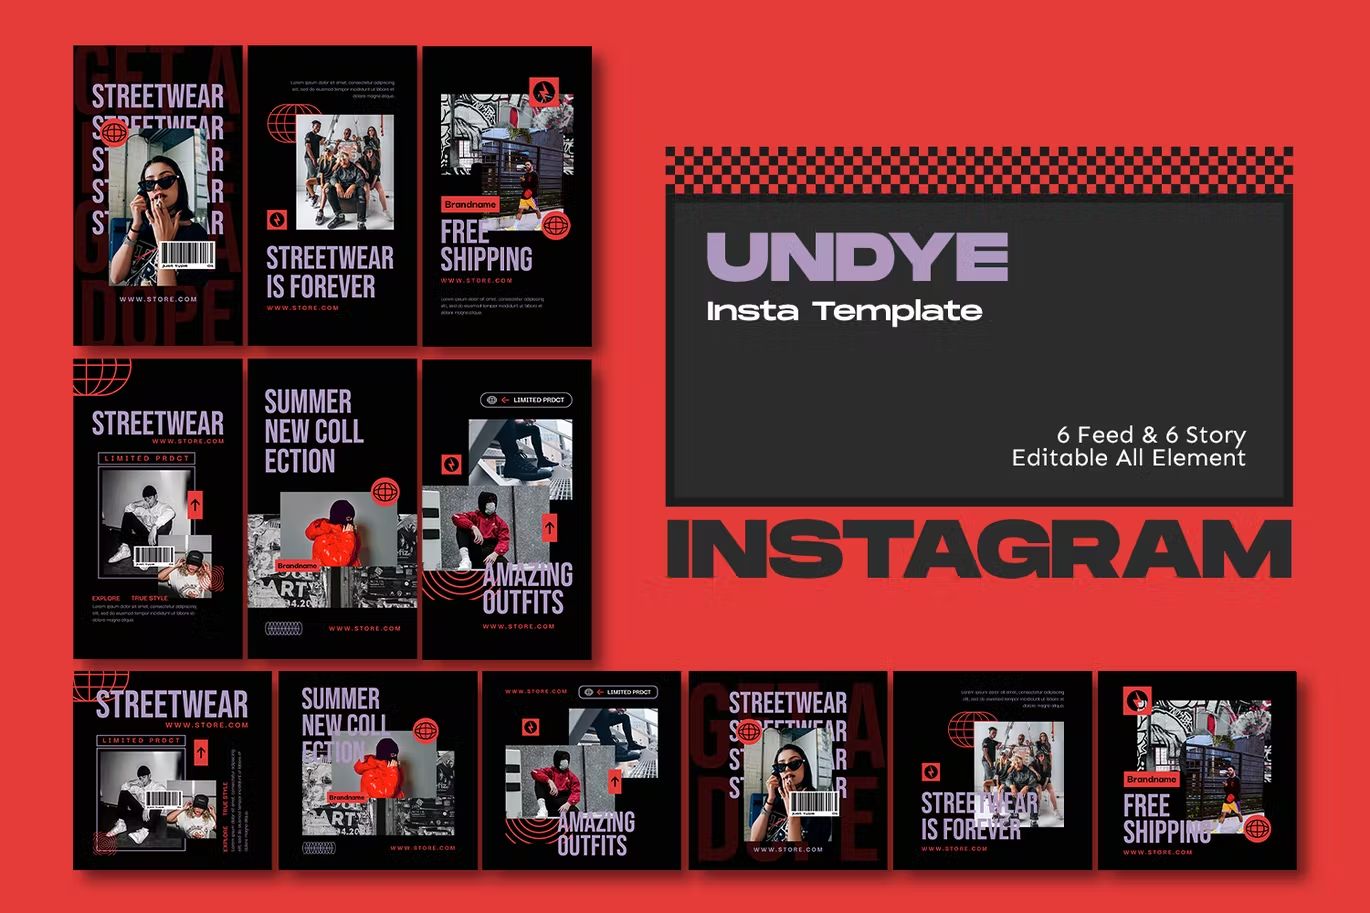 طرح لایه باز اینستاگرام Undye Streetwear Instagram Template